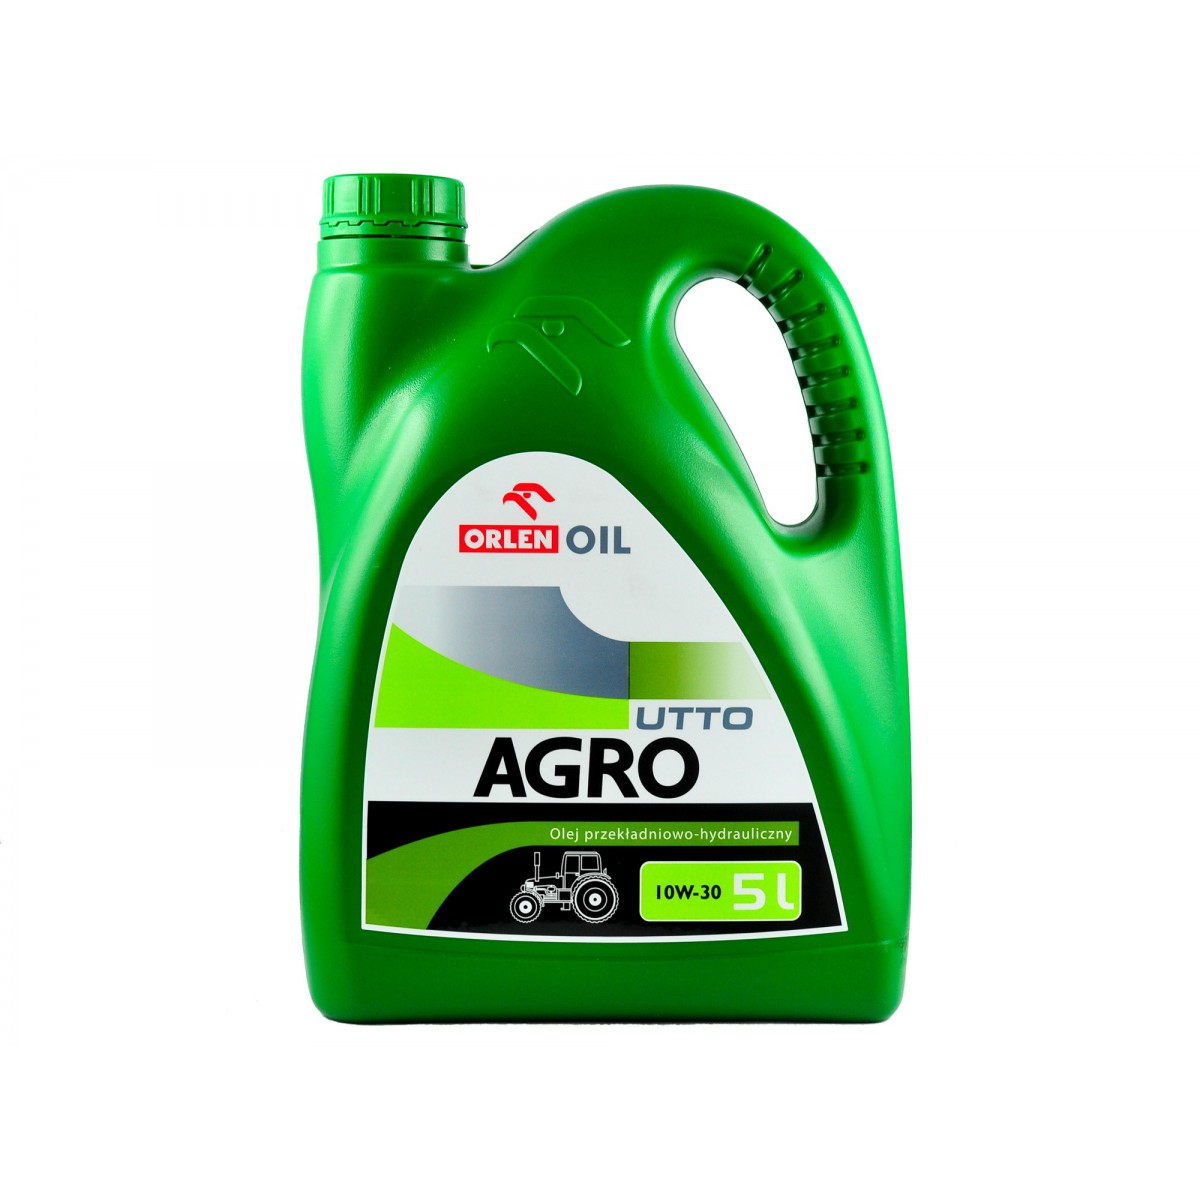 Olej przekładniowo-hydrauliczny AGRO UTTO 10W-30